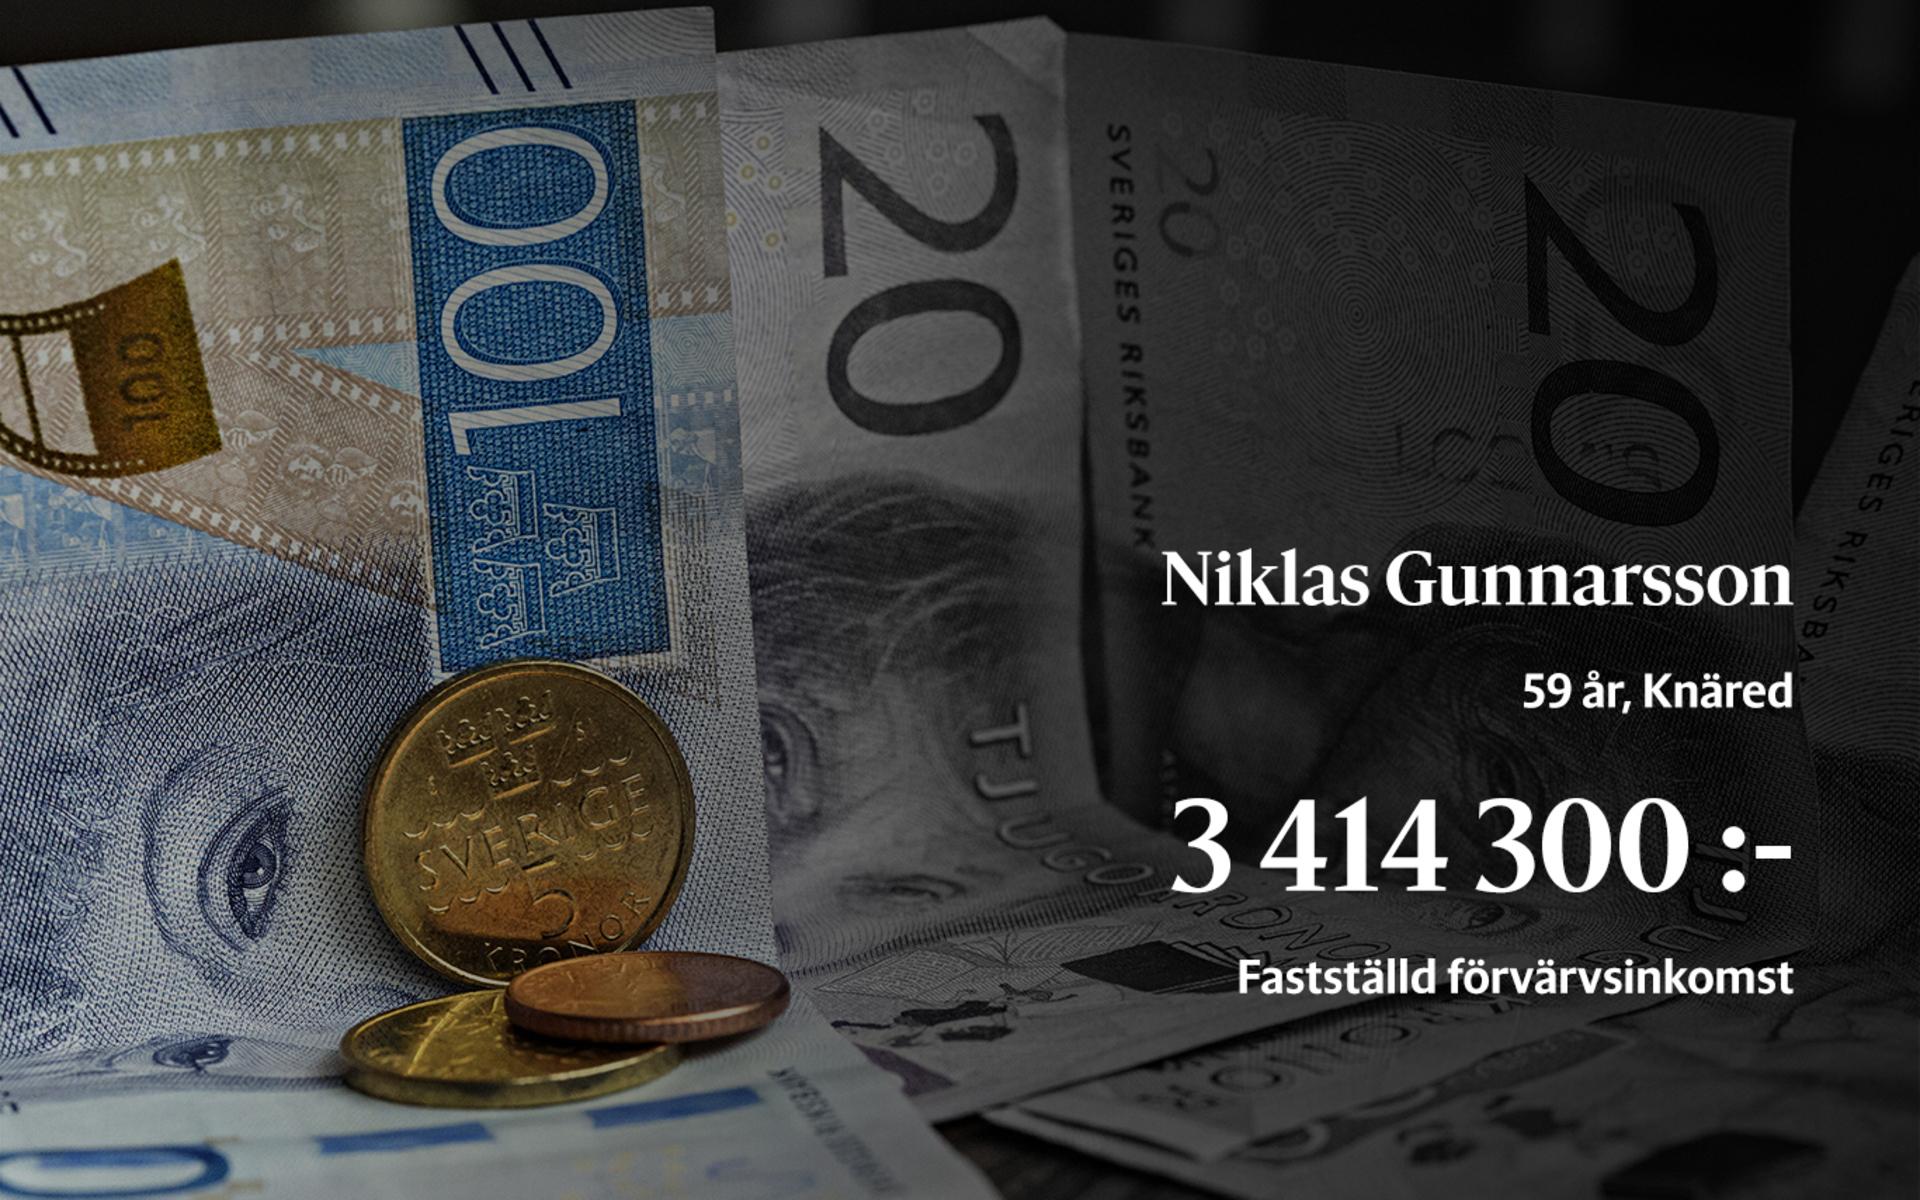 1:a i löneligan. Här följer de 20 största inkomsttagarna av fastställd förvärvsinkomst i Laholms kommun. Niklas Gunnarsson är affärsområdeschef för Nibe Stoves.